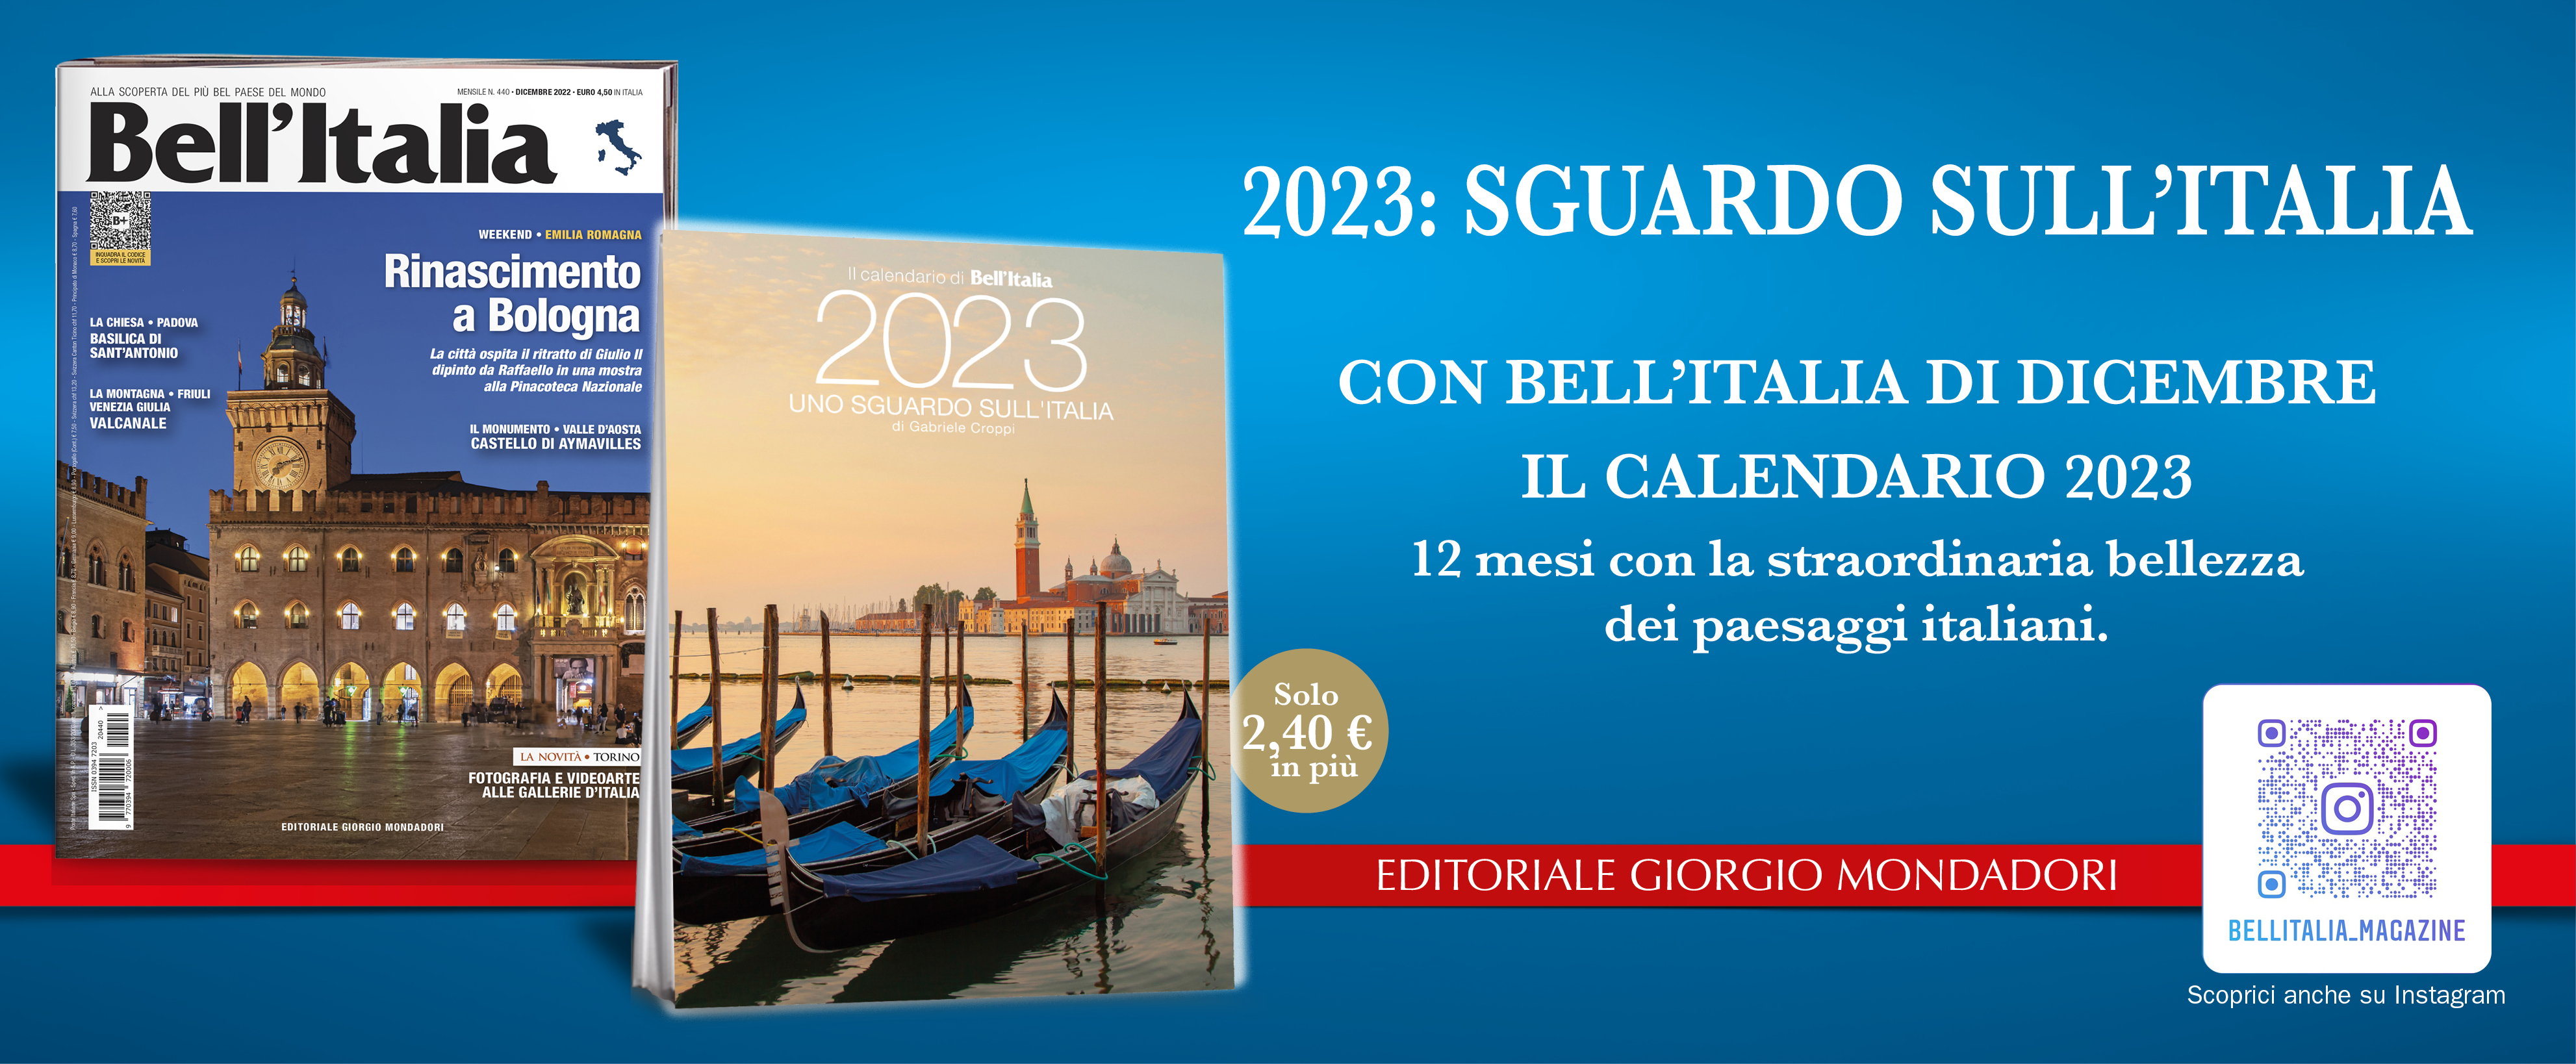 2023: SGUARDO SULL’ITALIA